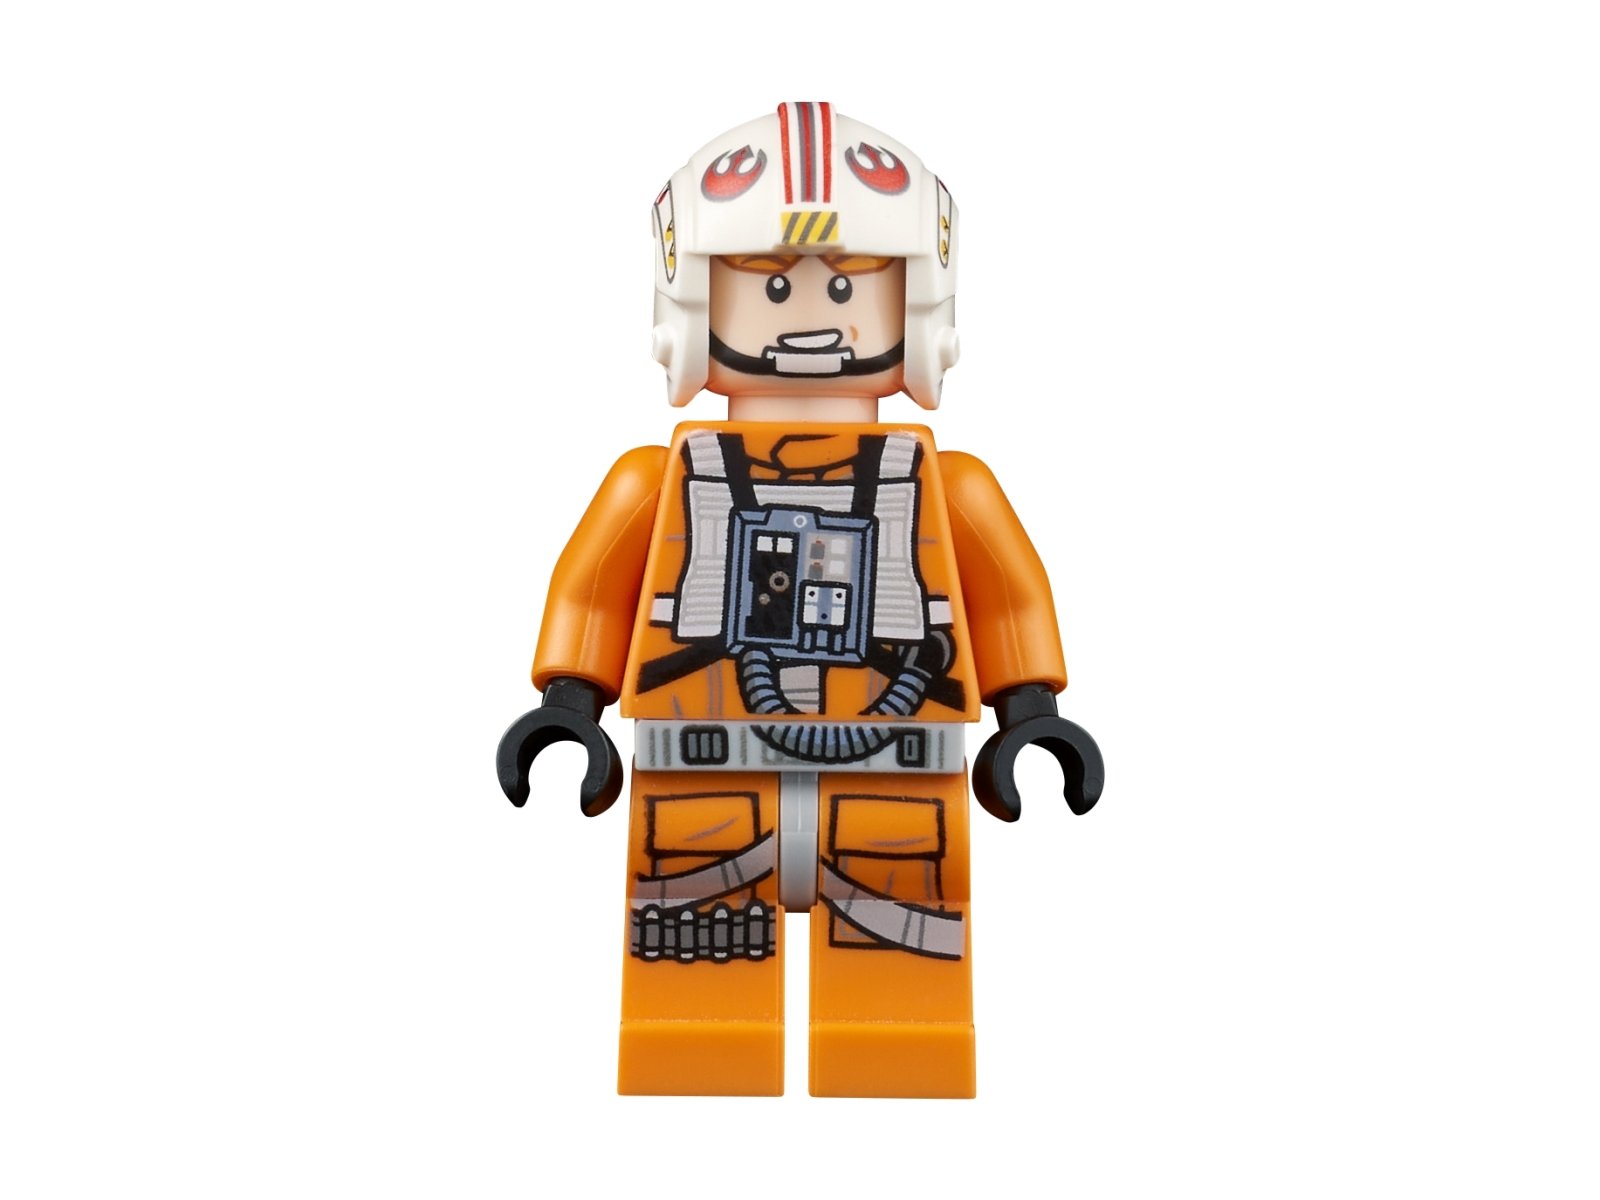 LEGO Star Wars AT-AT™ 75313